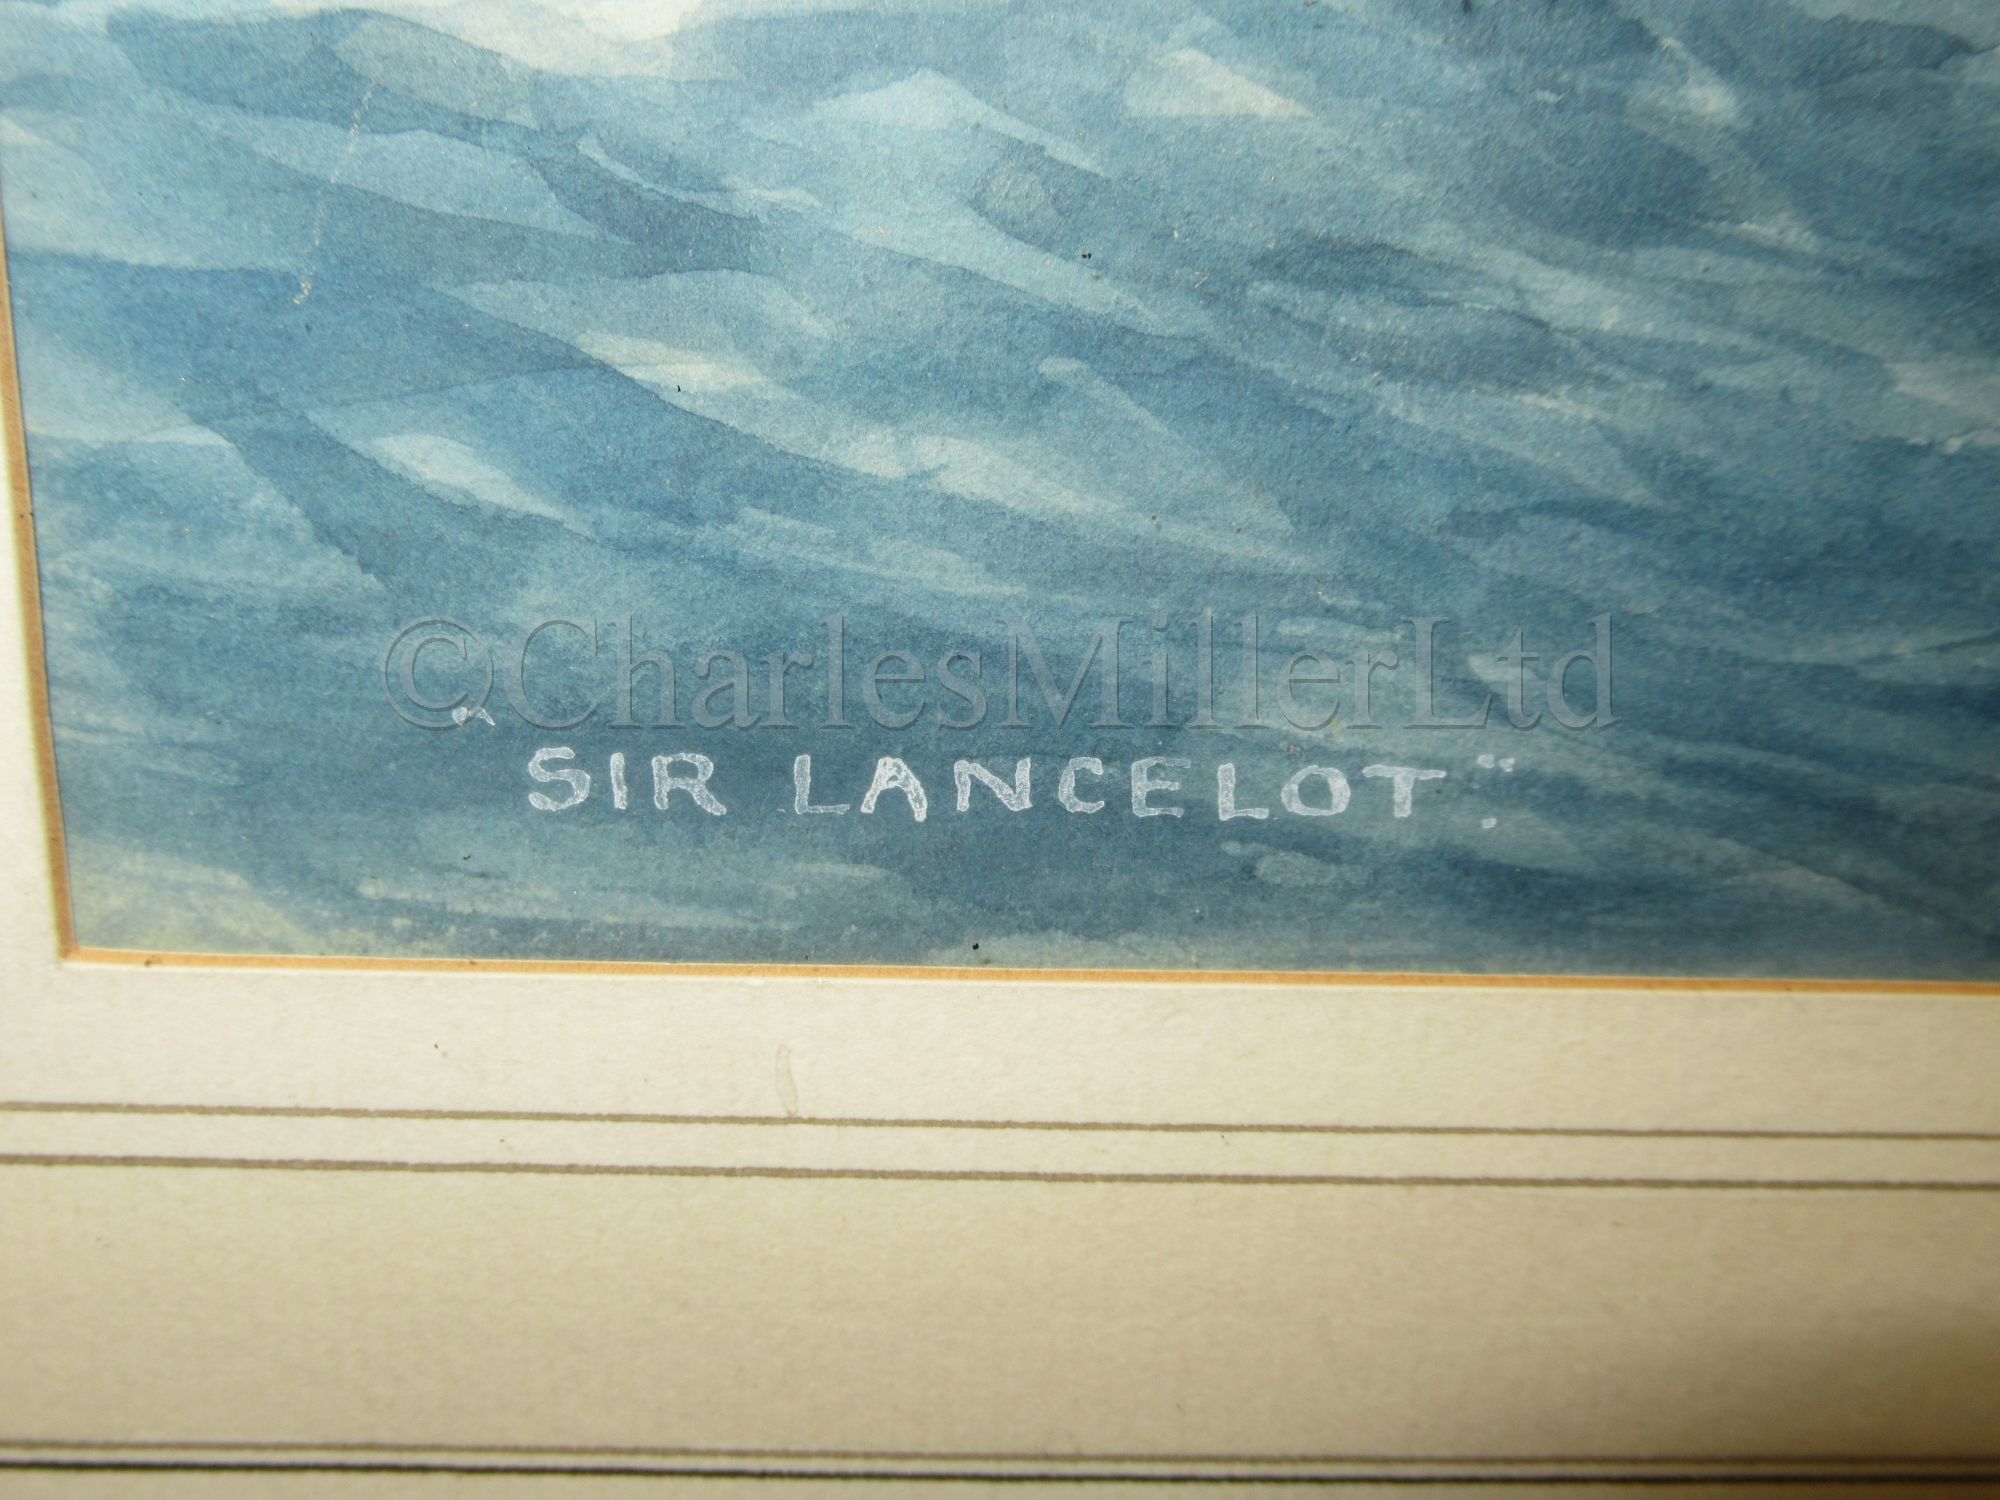 δ ERIC TUFNELL (BRITISH, 1888-1979) : The China tea clipper ‘Sir Lancelot’ - Image 3 of 8